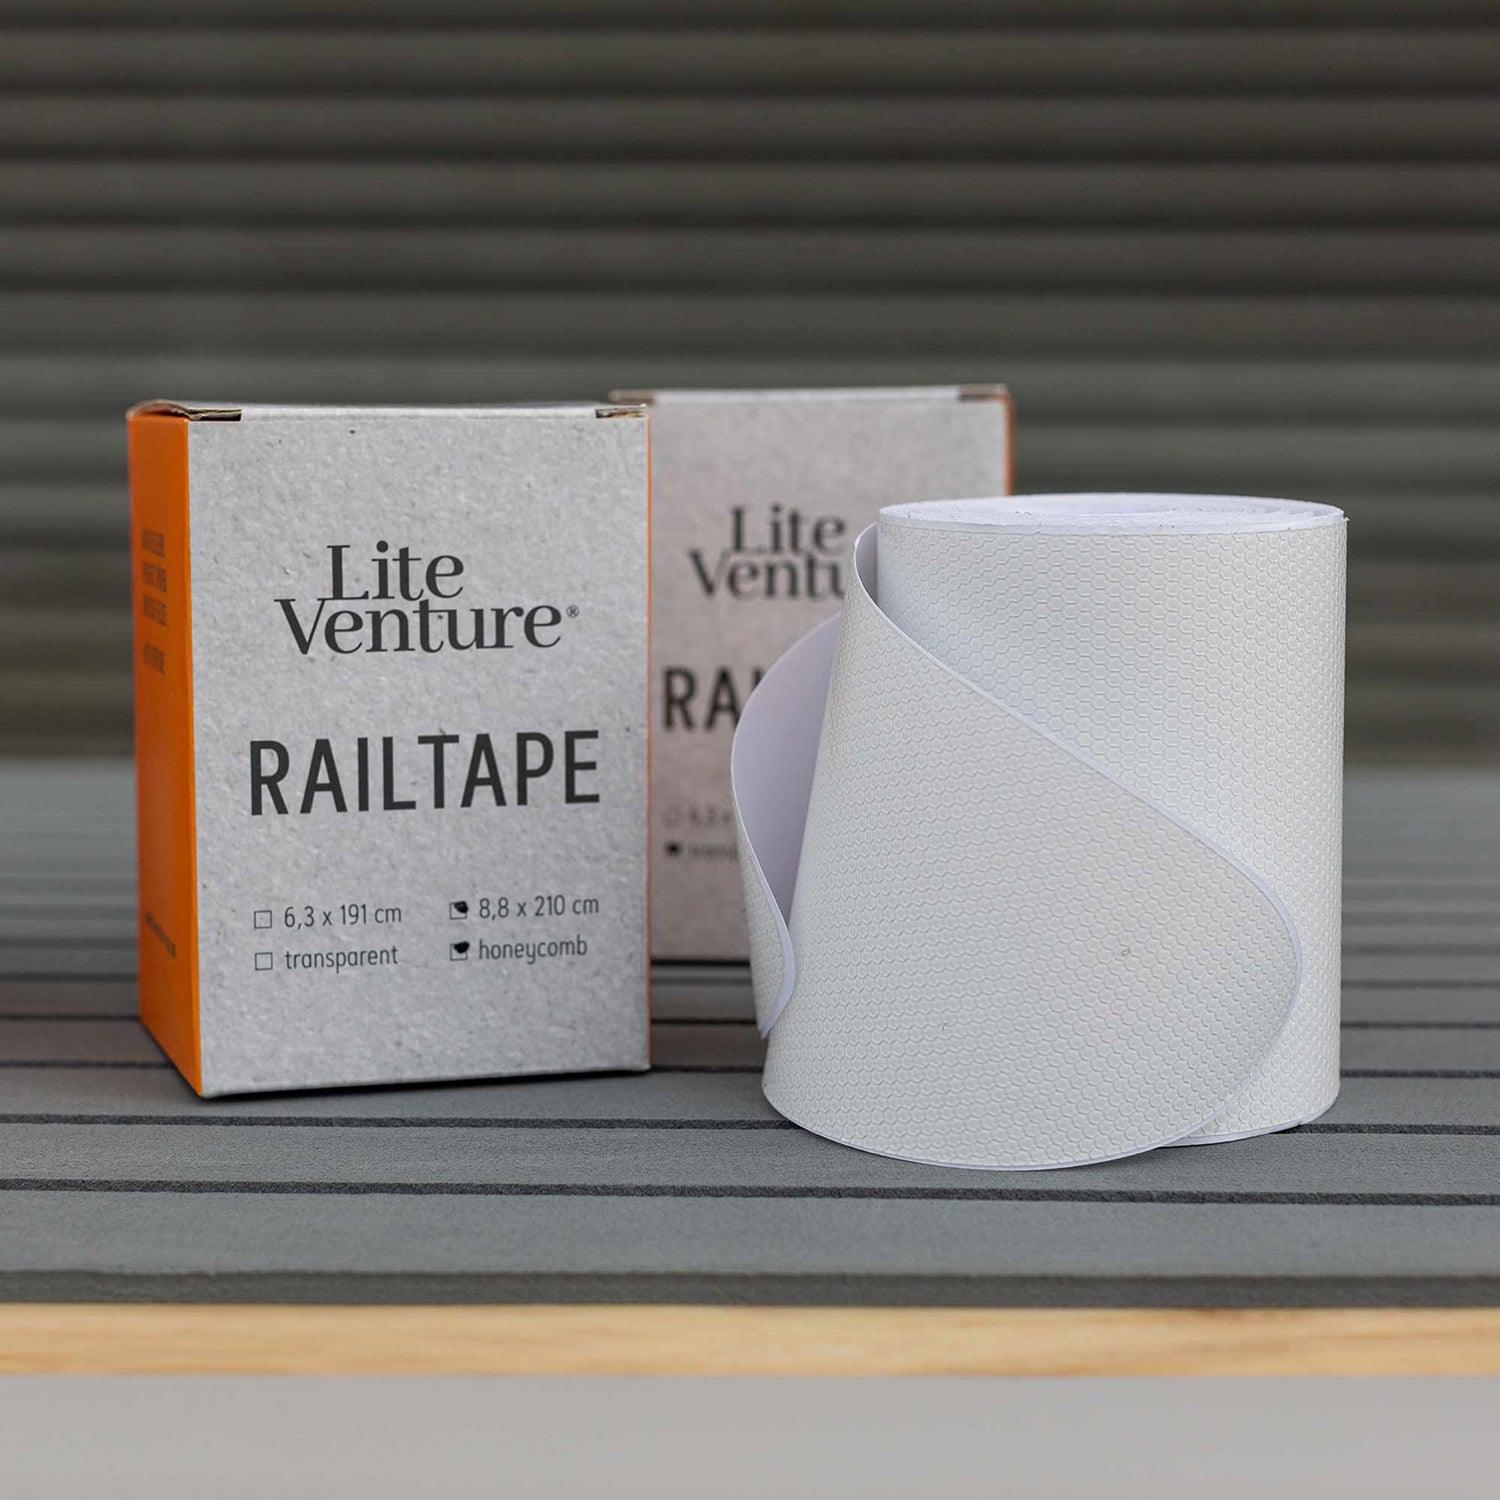 Produktbild von zubehör " Railsaver Tape " der Marke Lite Venture für 29.00 €. Erhältlich online bei Lite Venture ( www.liteventure.de )